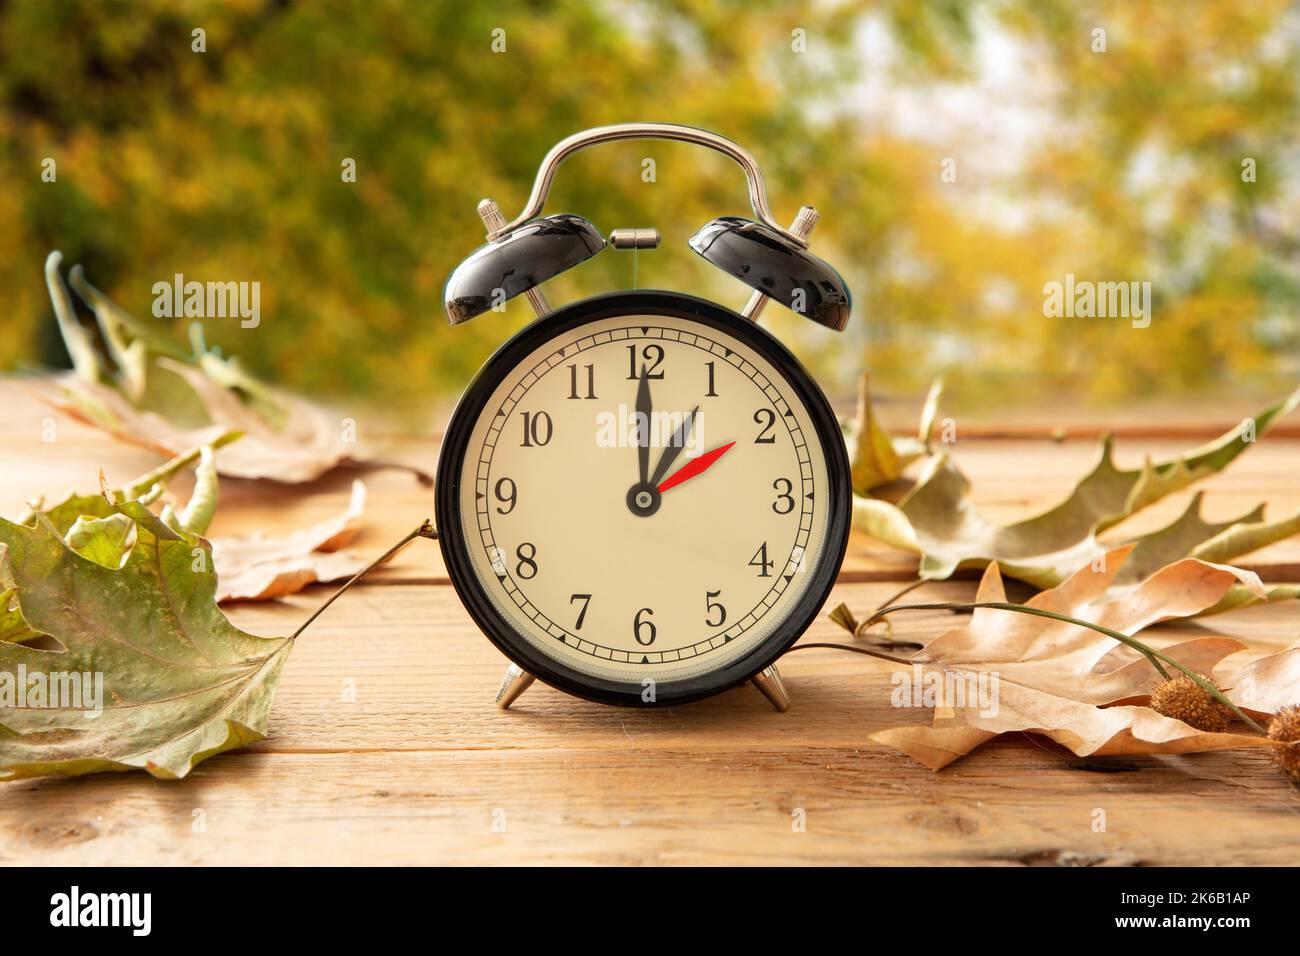 Fallen Sie eine Stunde zurück. Sommerzeit, schwarzer Wecker mit Zeitwechsel auf Holztisch. Herbstbäume und Blätter Hintergrund Stockfoto